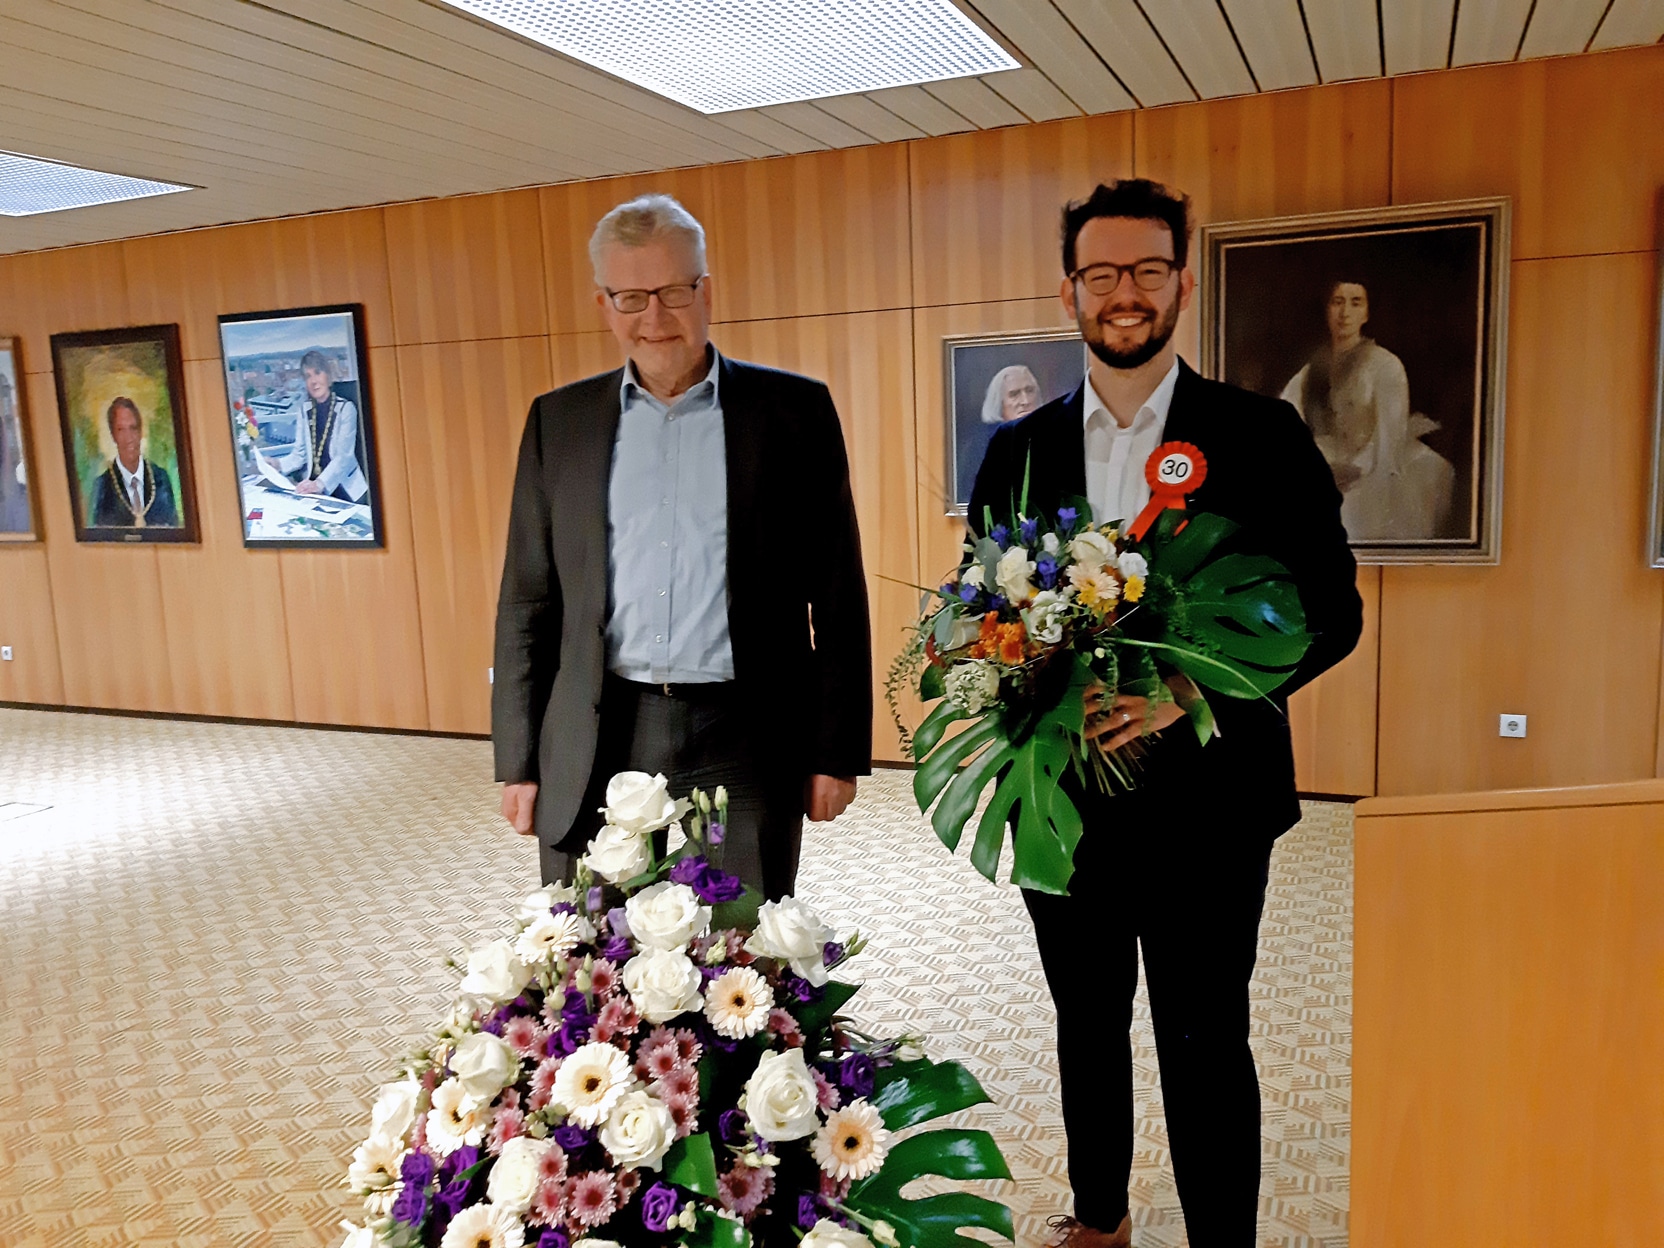 OB Ebersberger und 2. Bürgermeister Zippel mit Blumenstrauß.